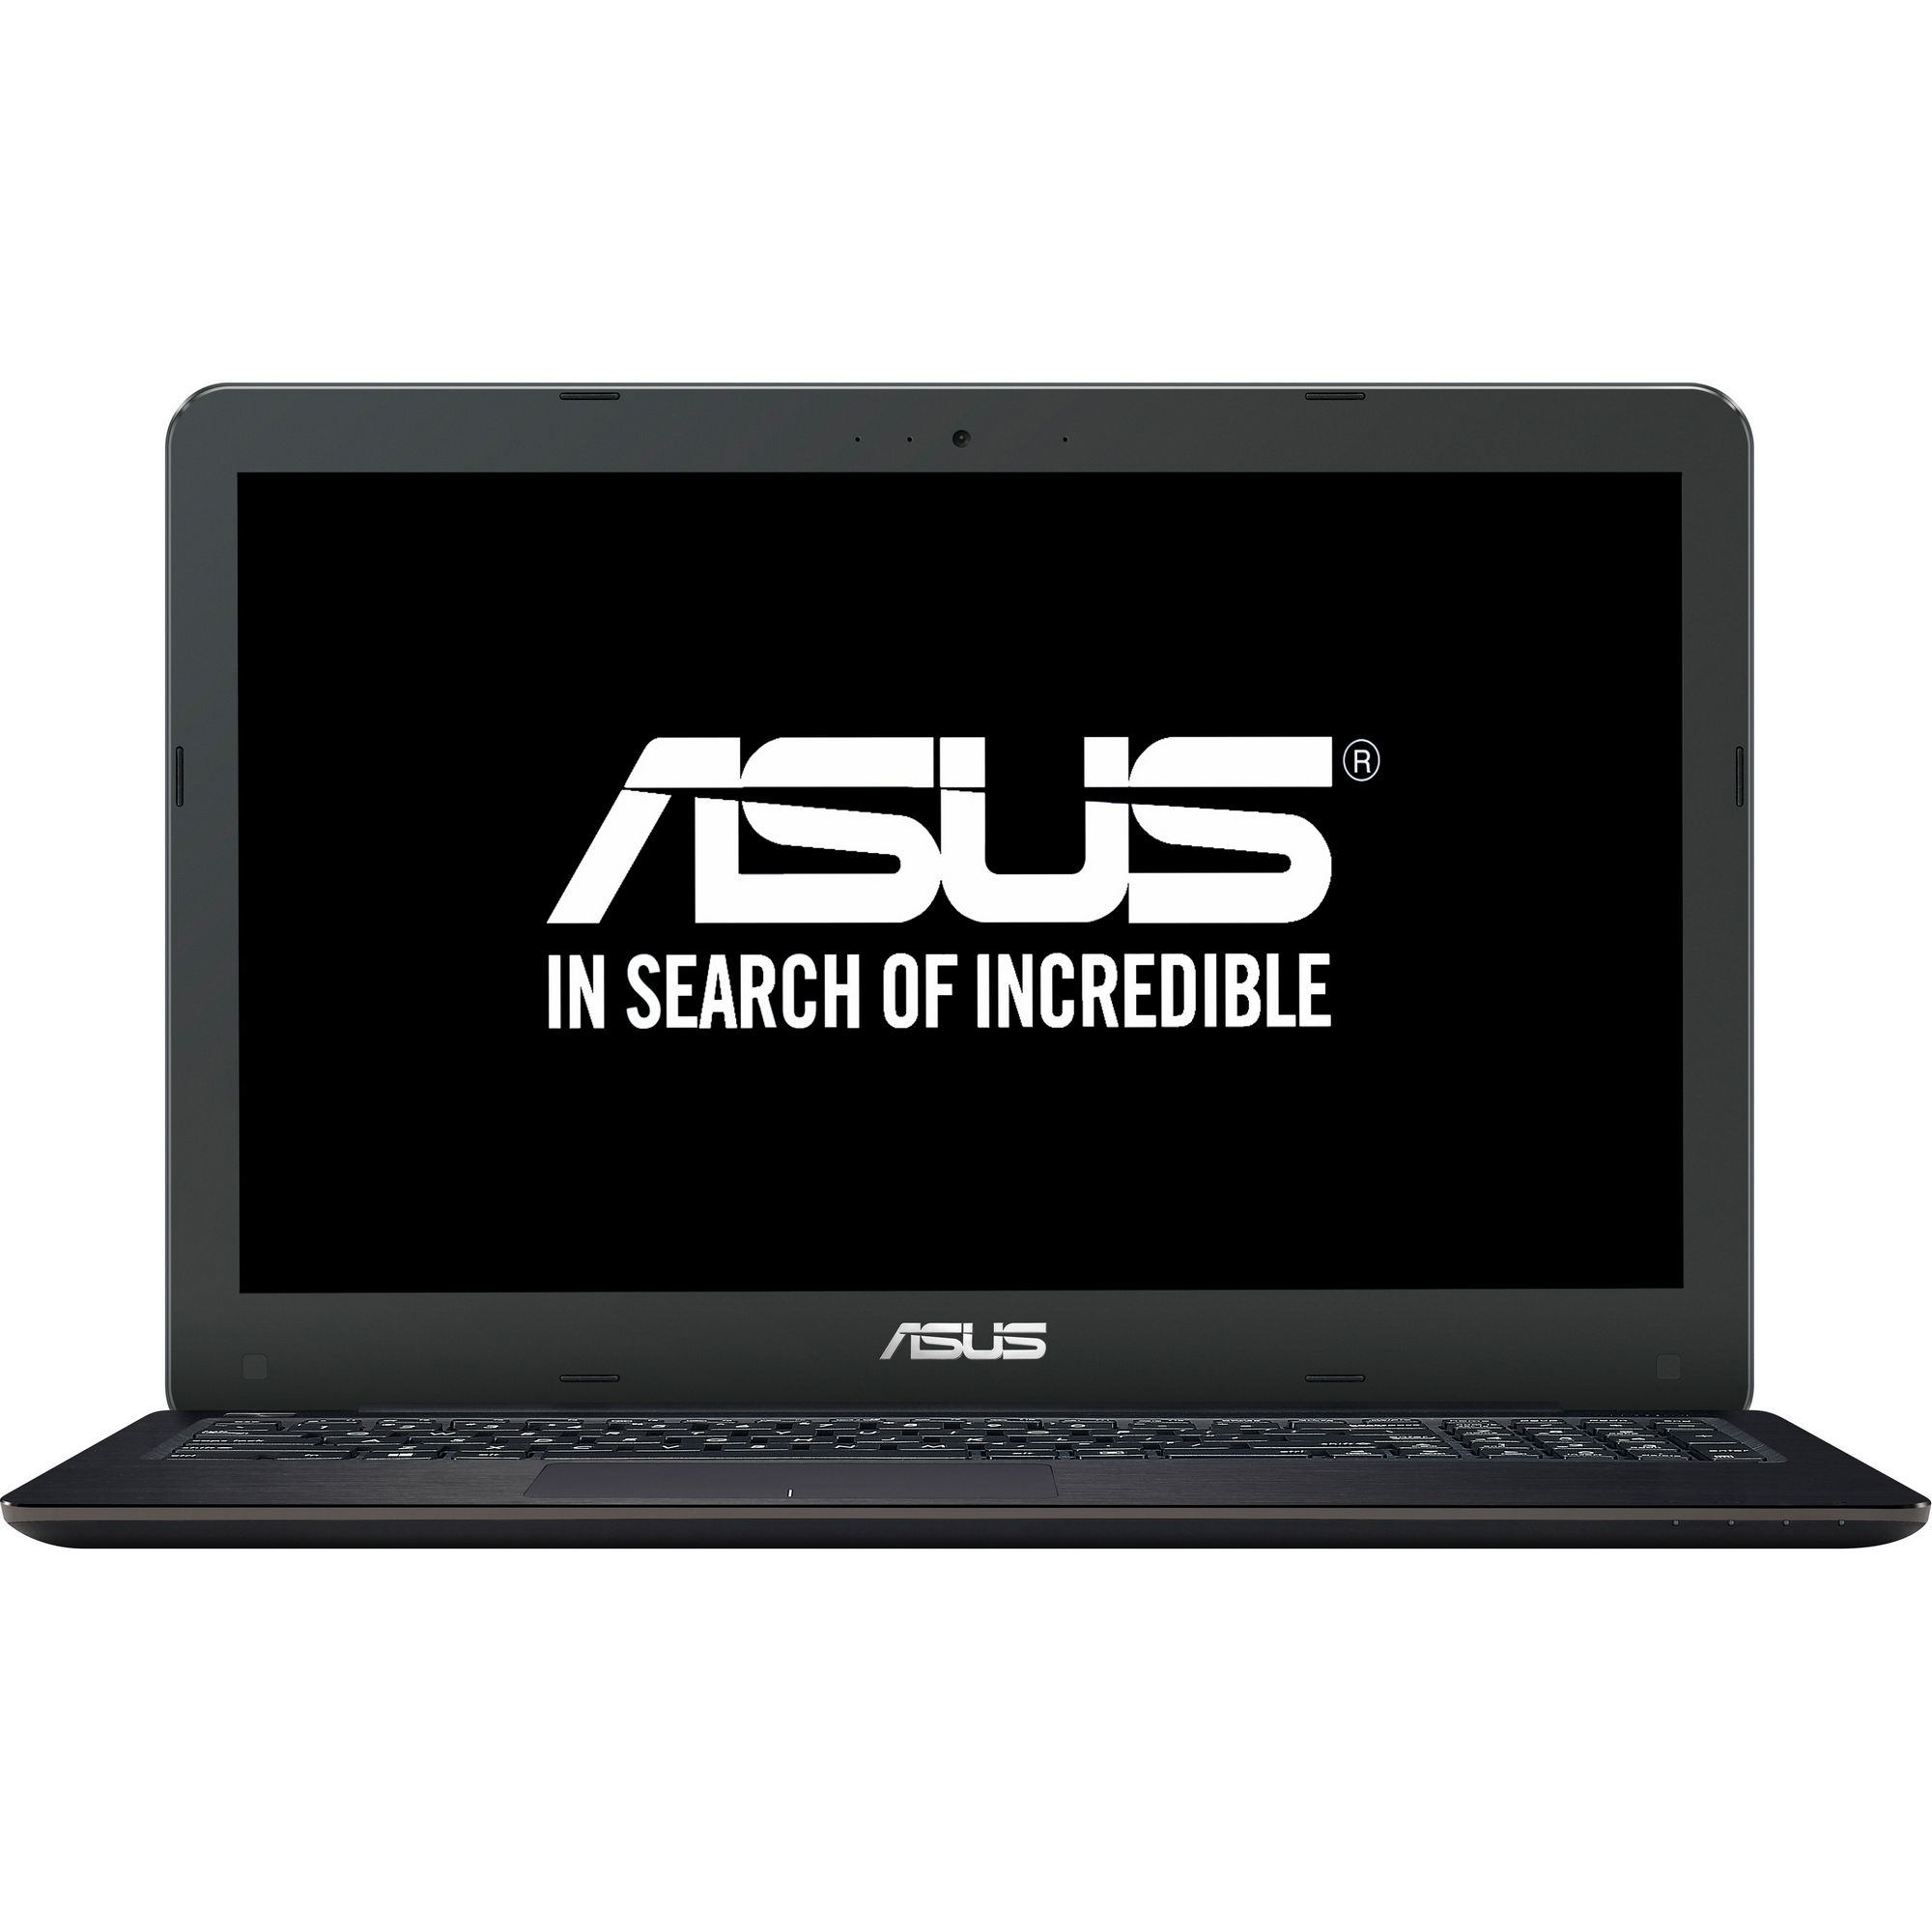  Laptop Asus X556UB-XX040D, Intel Core i7-6500U, 4GB DDR3, HDD 1TB, nVidia GeForce 940M 2GB, Free DOS 